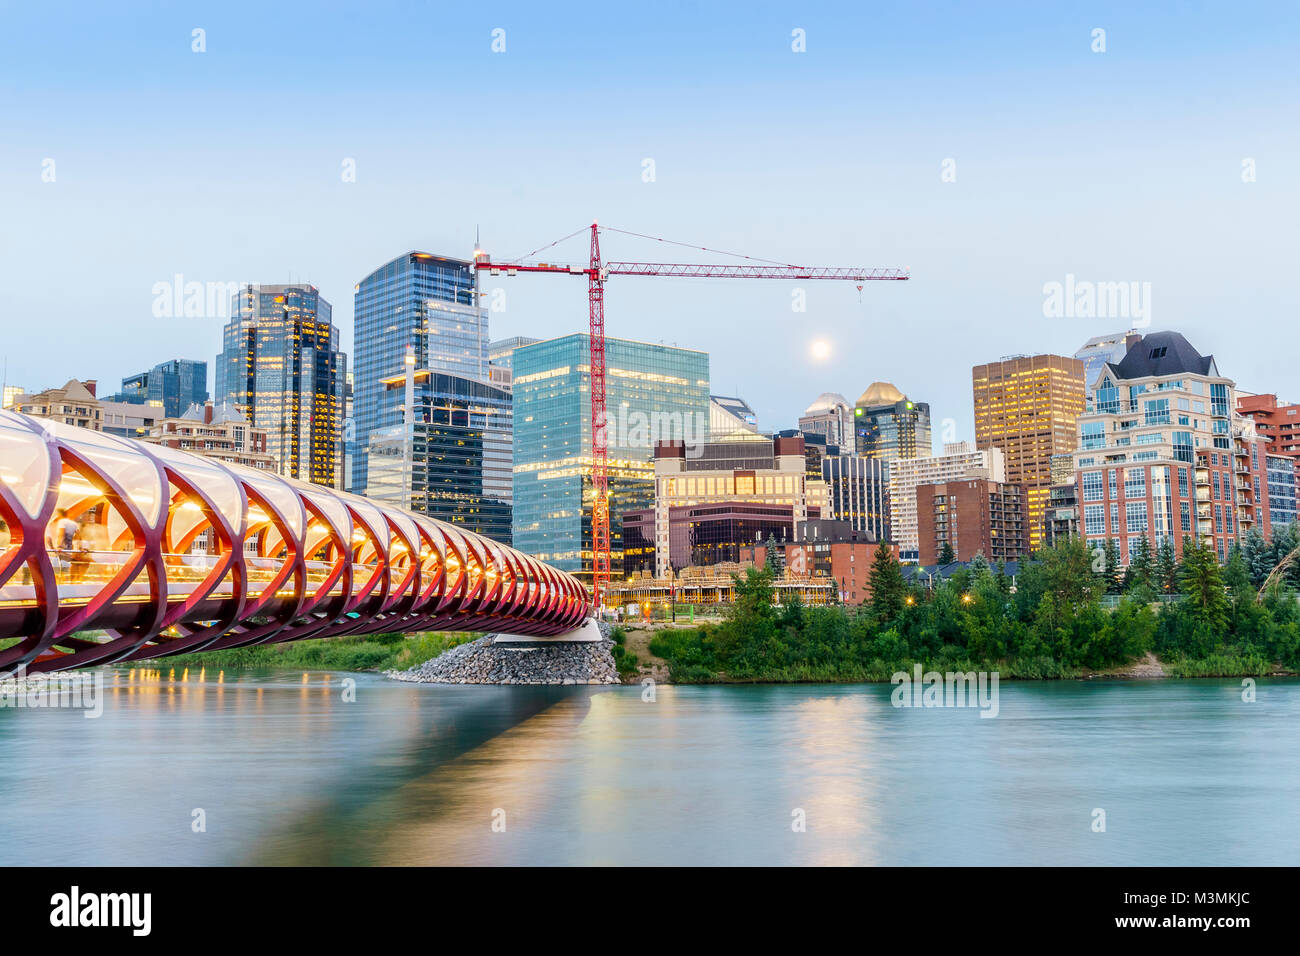 Le centre-ville de Calgary avec pont de la paix et les édifices à bureaux, de l'Alberta, Canada Banque D'Images